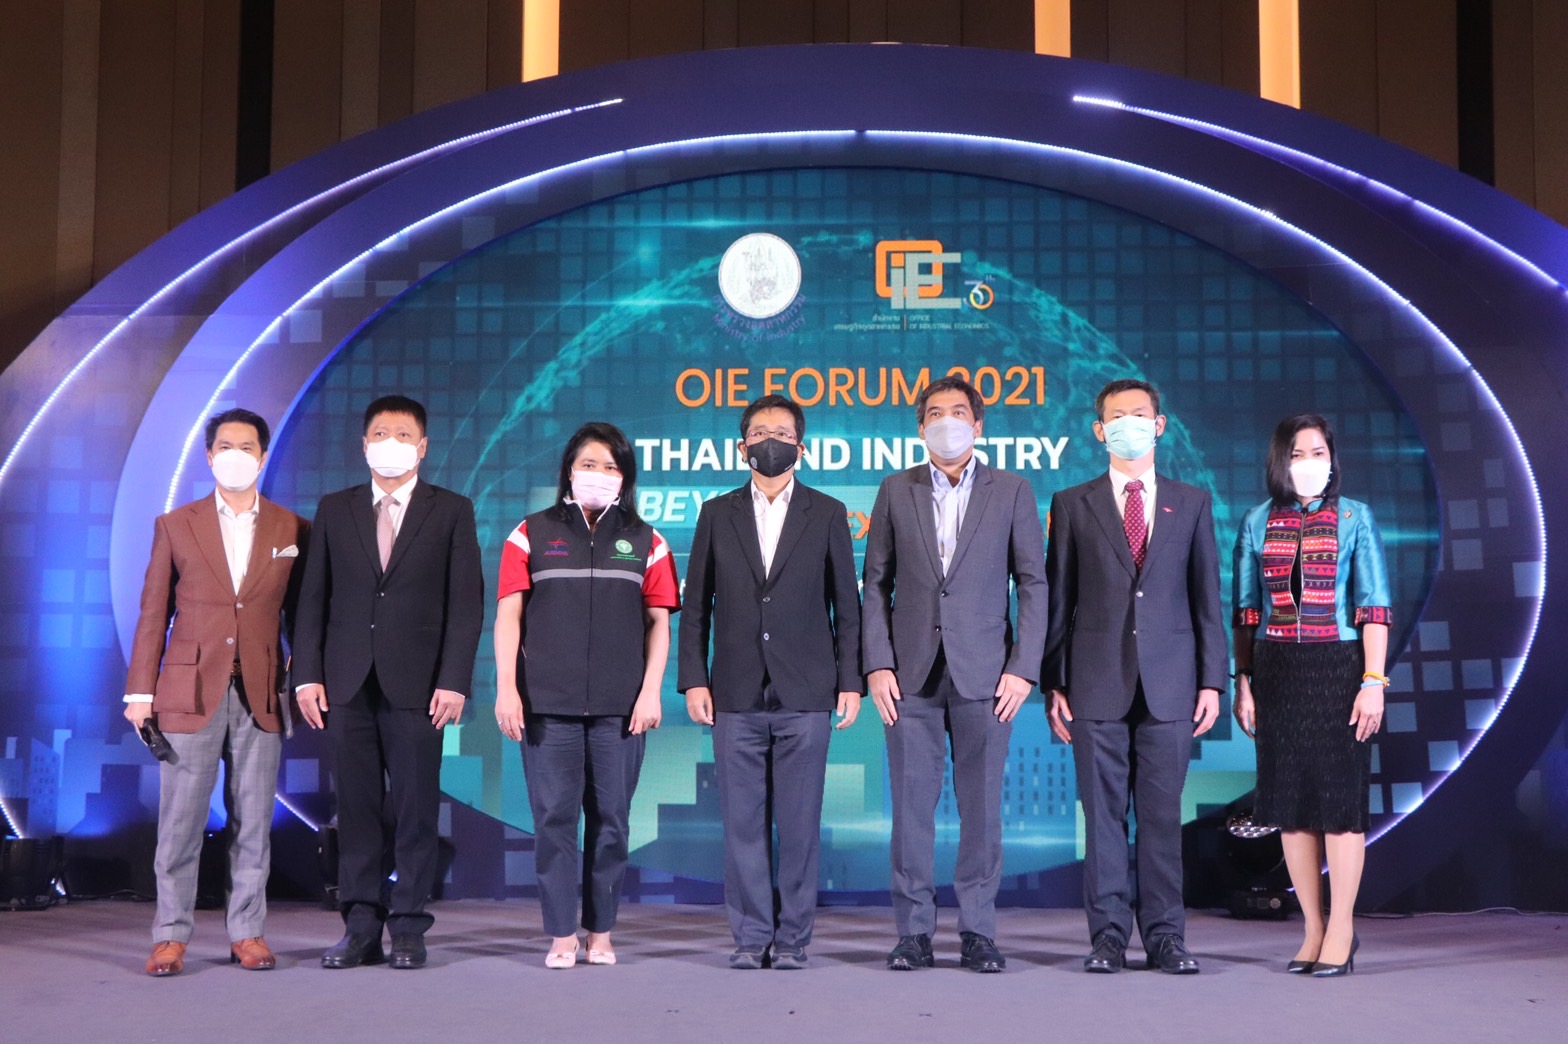 งานประจำปี OIE Forum 2021 : Thailand Industry Beyond Next Normal อุตสาหกรรมไทยก้าวไกล สู่ยุคใหม่ที่ยั่งยืน" 